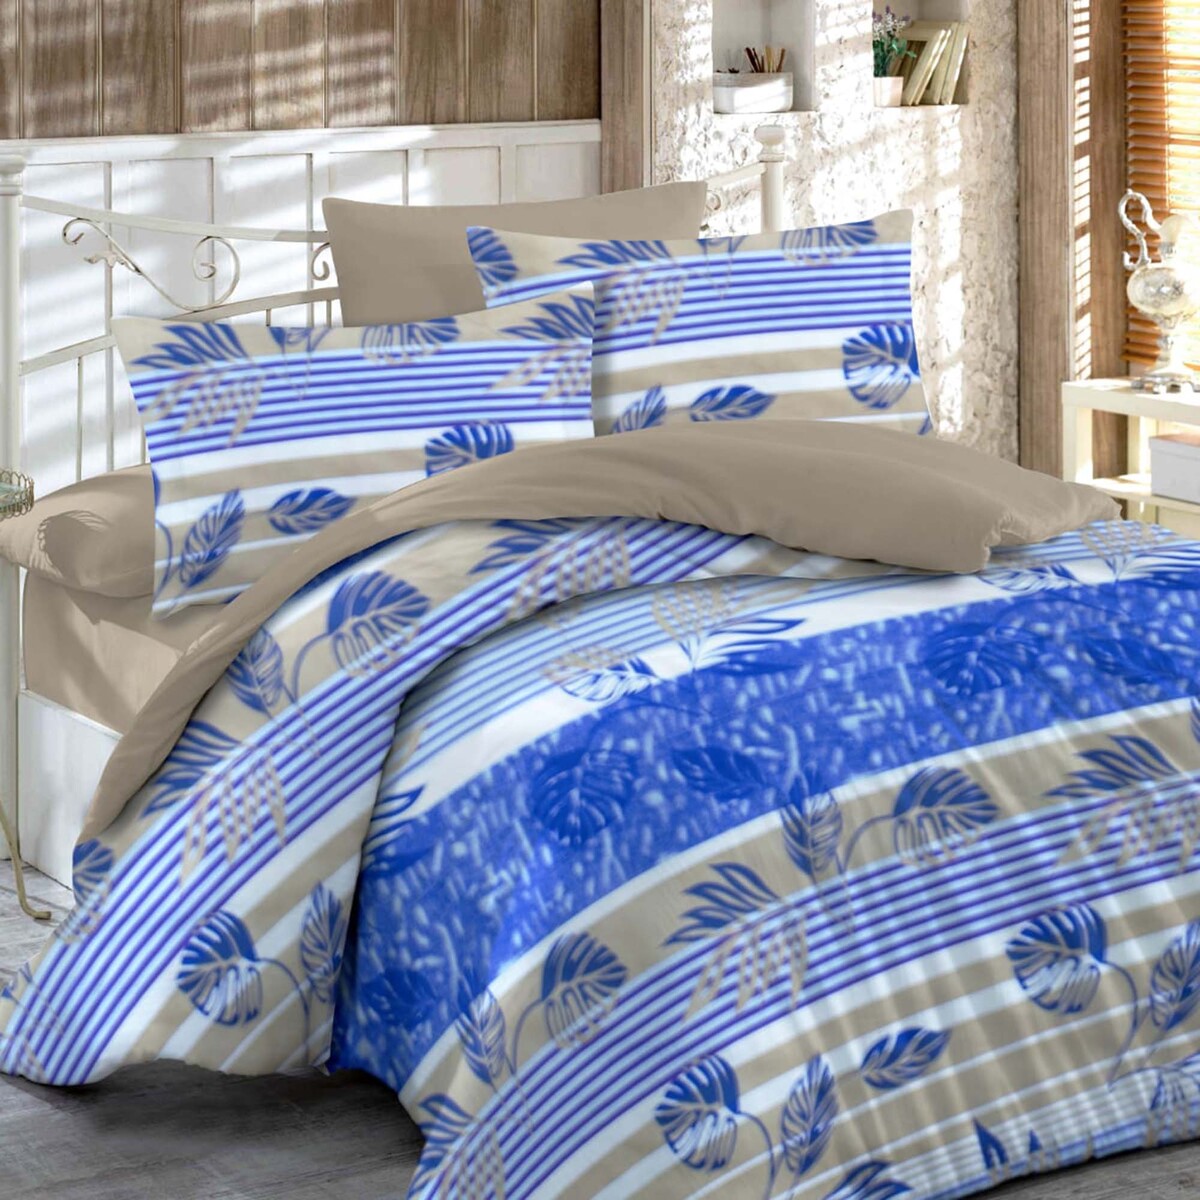 Rest Comforter 220 x 240 4pcs Online at Best Price, Comforters